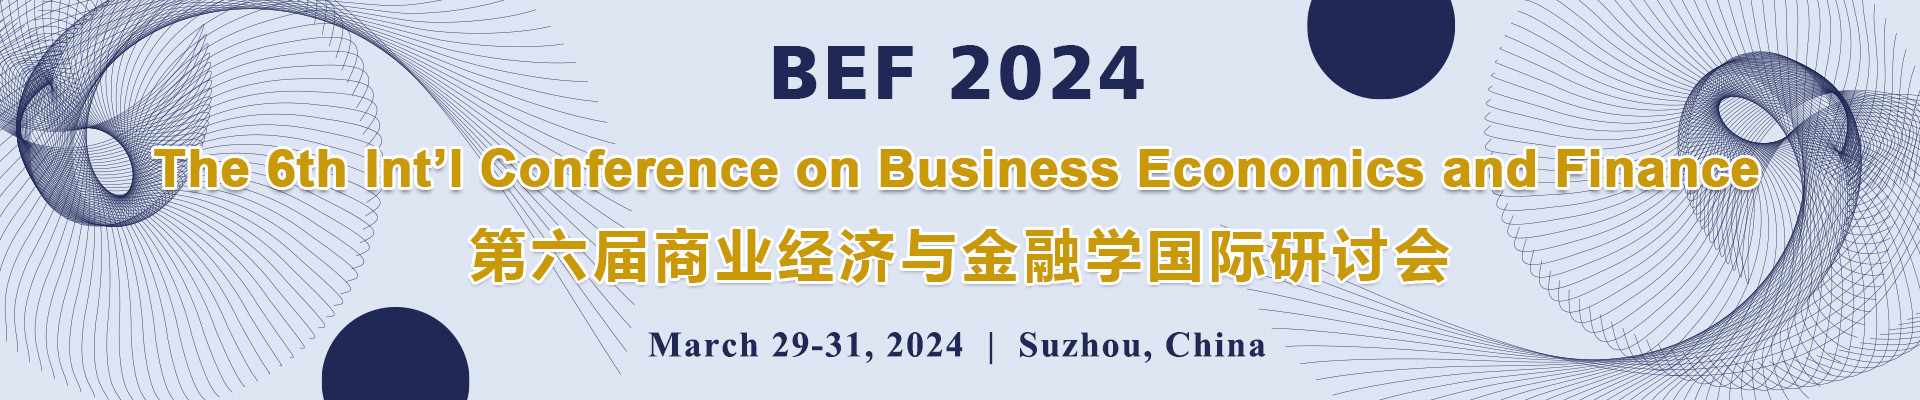 第六届商业经济与金融学国际研讨会(BEF 2024)